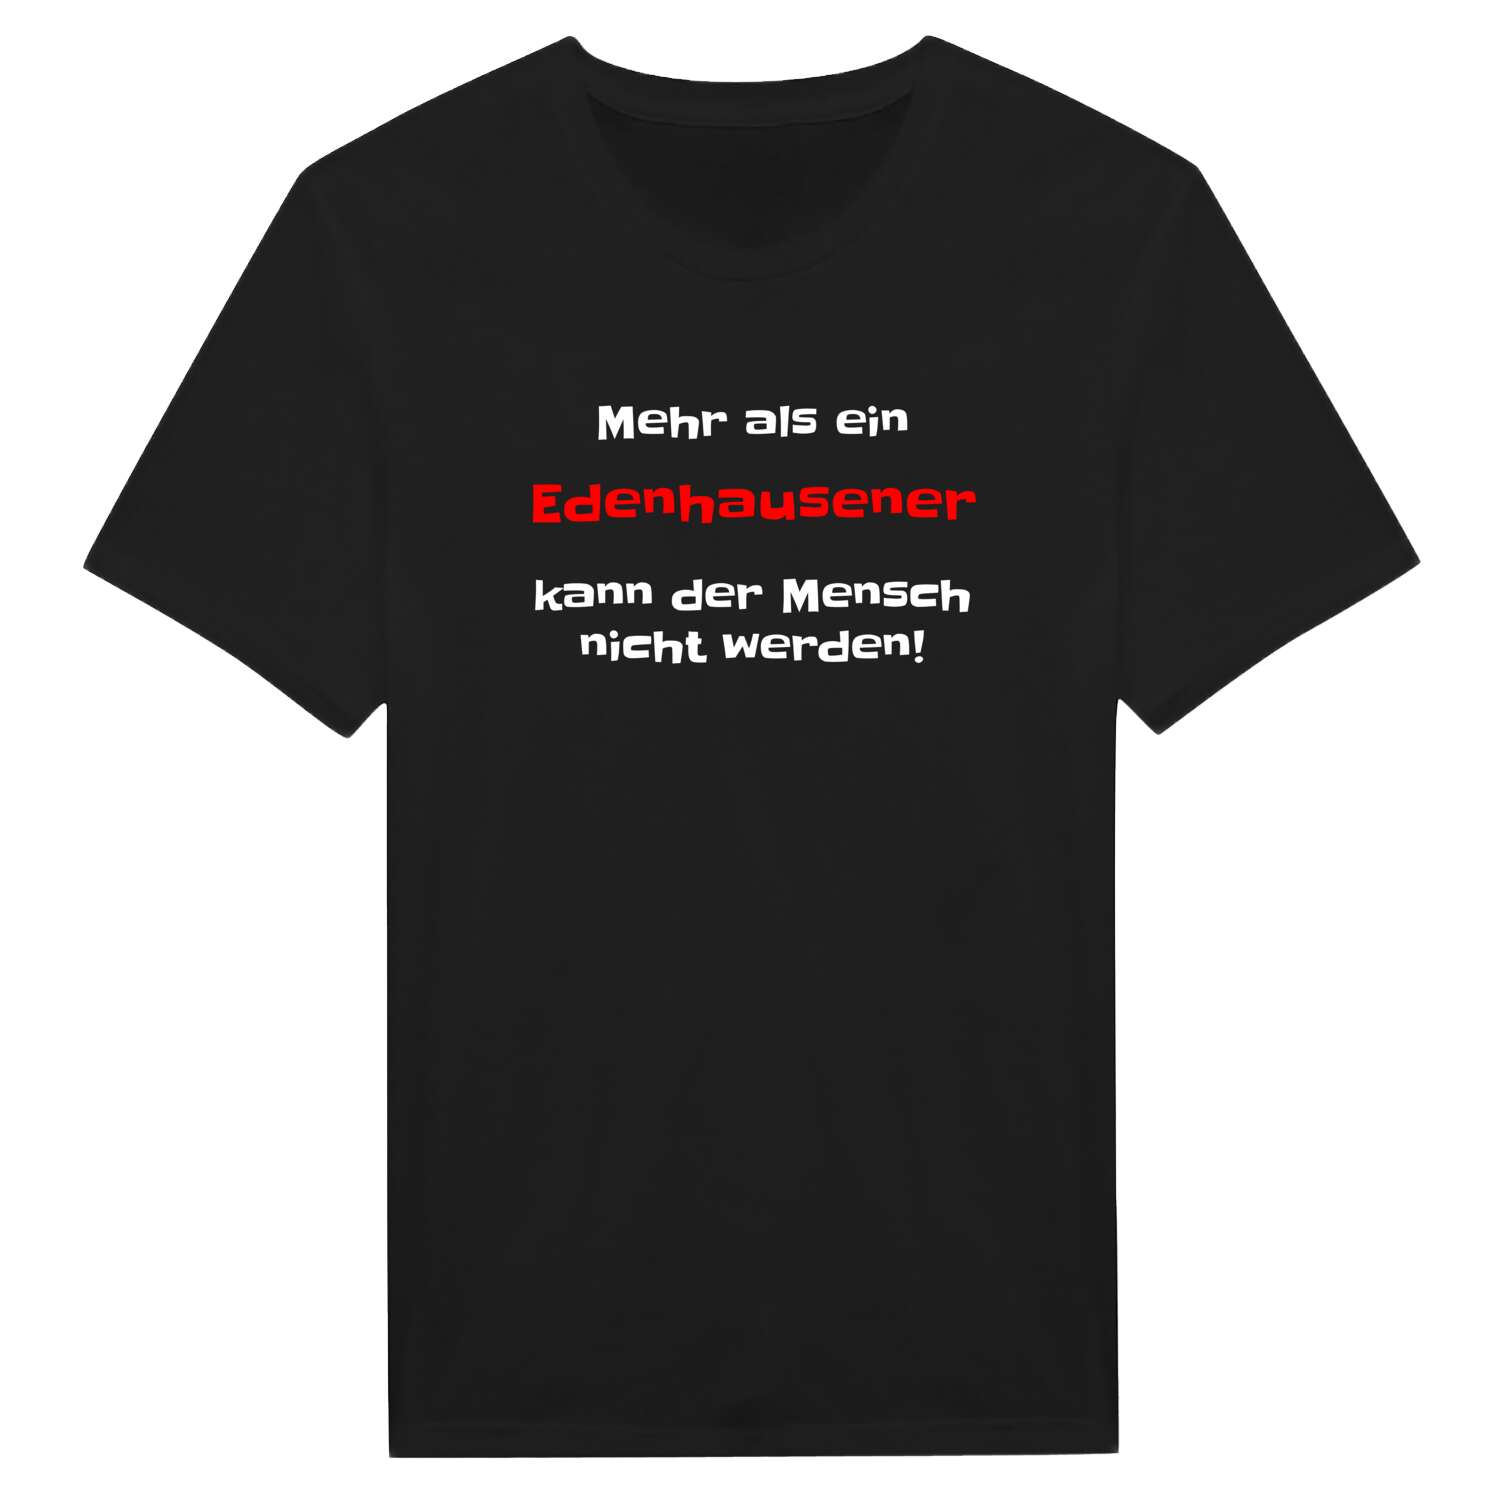 Edenhausen T-Shirt »Mehr als ein«